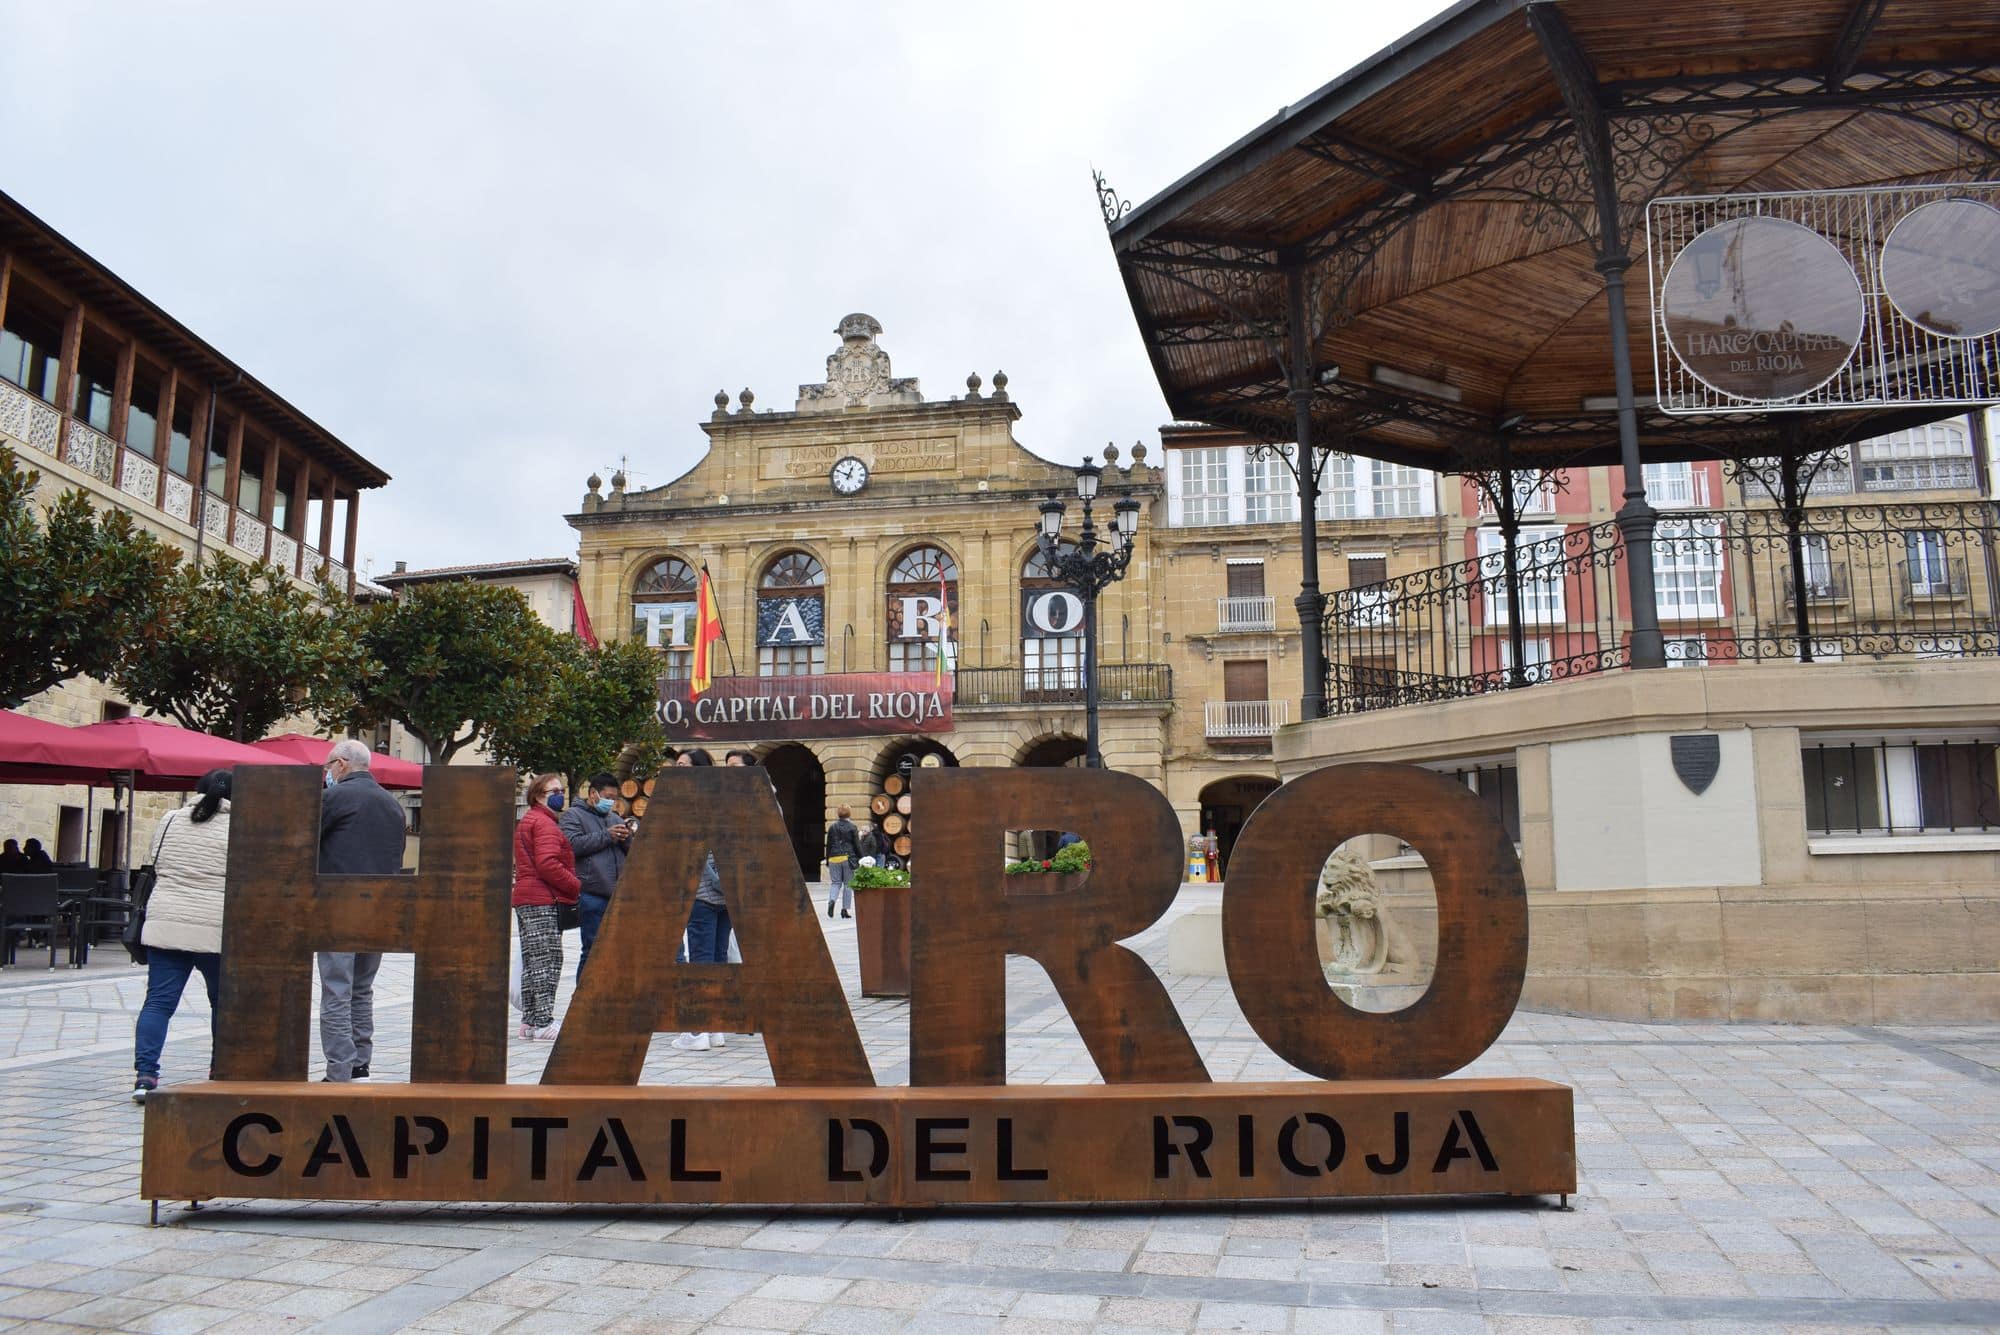 Haro Capital del Rioja